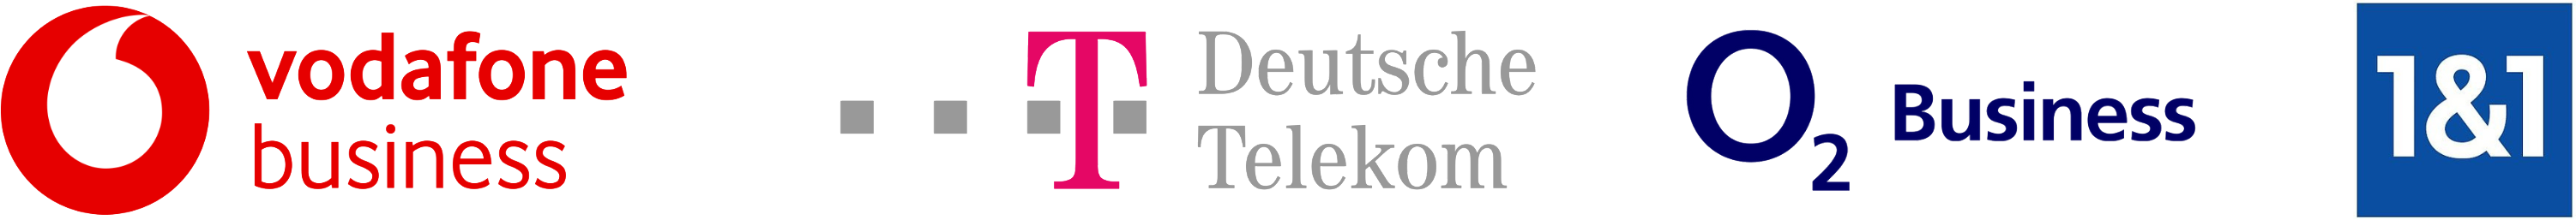 tele-master.de providers logo